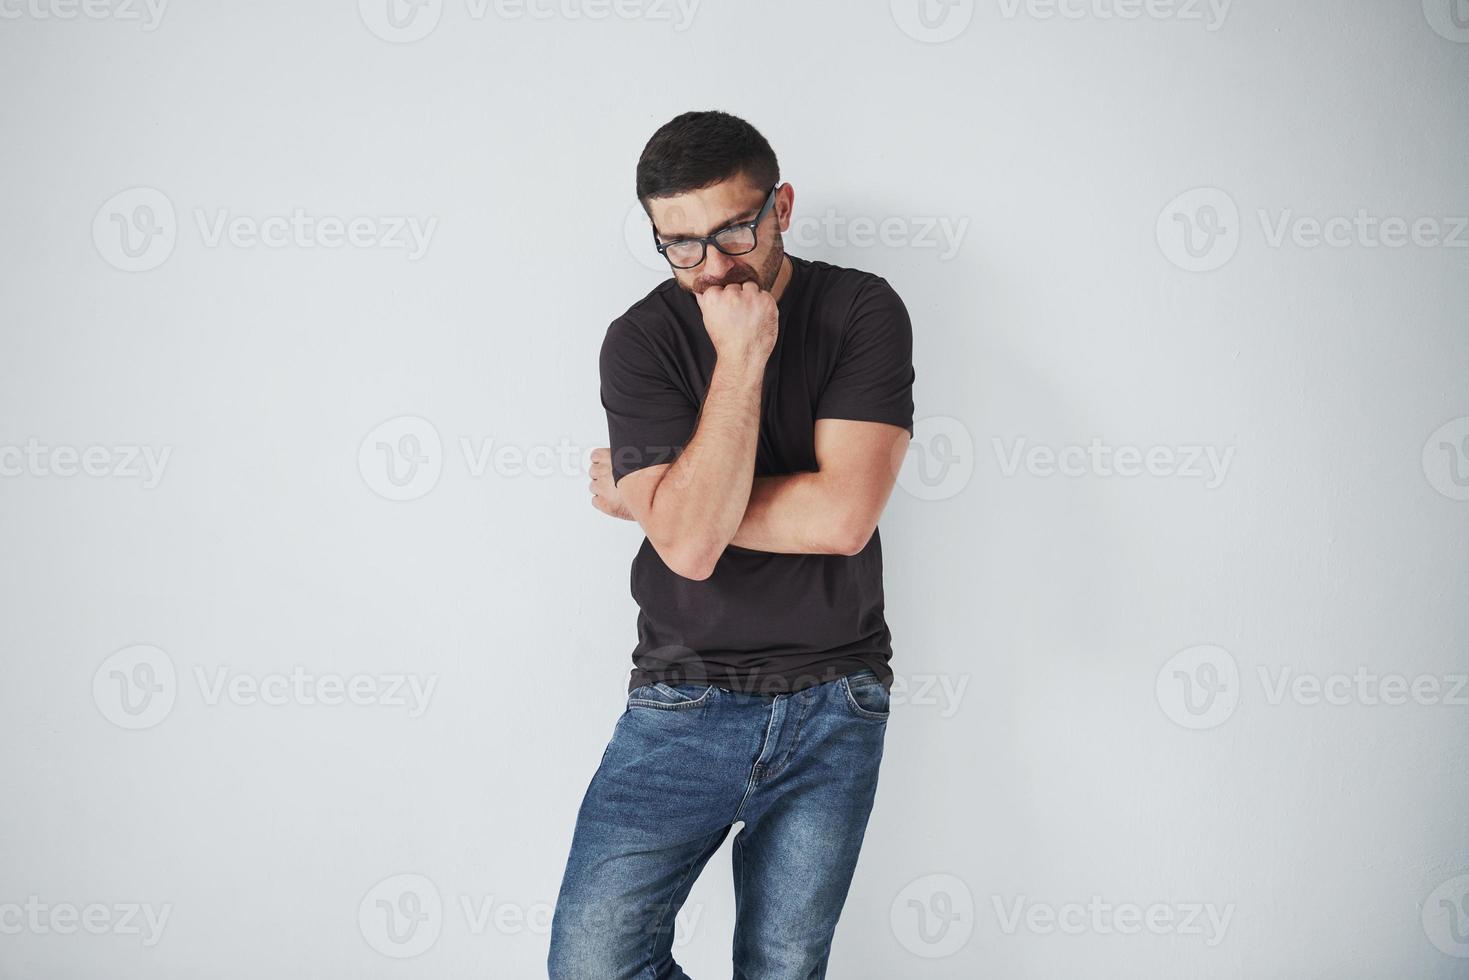 portret van een knappe jonge man die aan iets denkt, geïsoleerd op een witte achtergrond. het lijkt erop dat hij een nieuw geweldig idee had foto